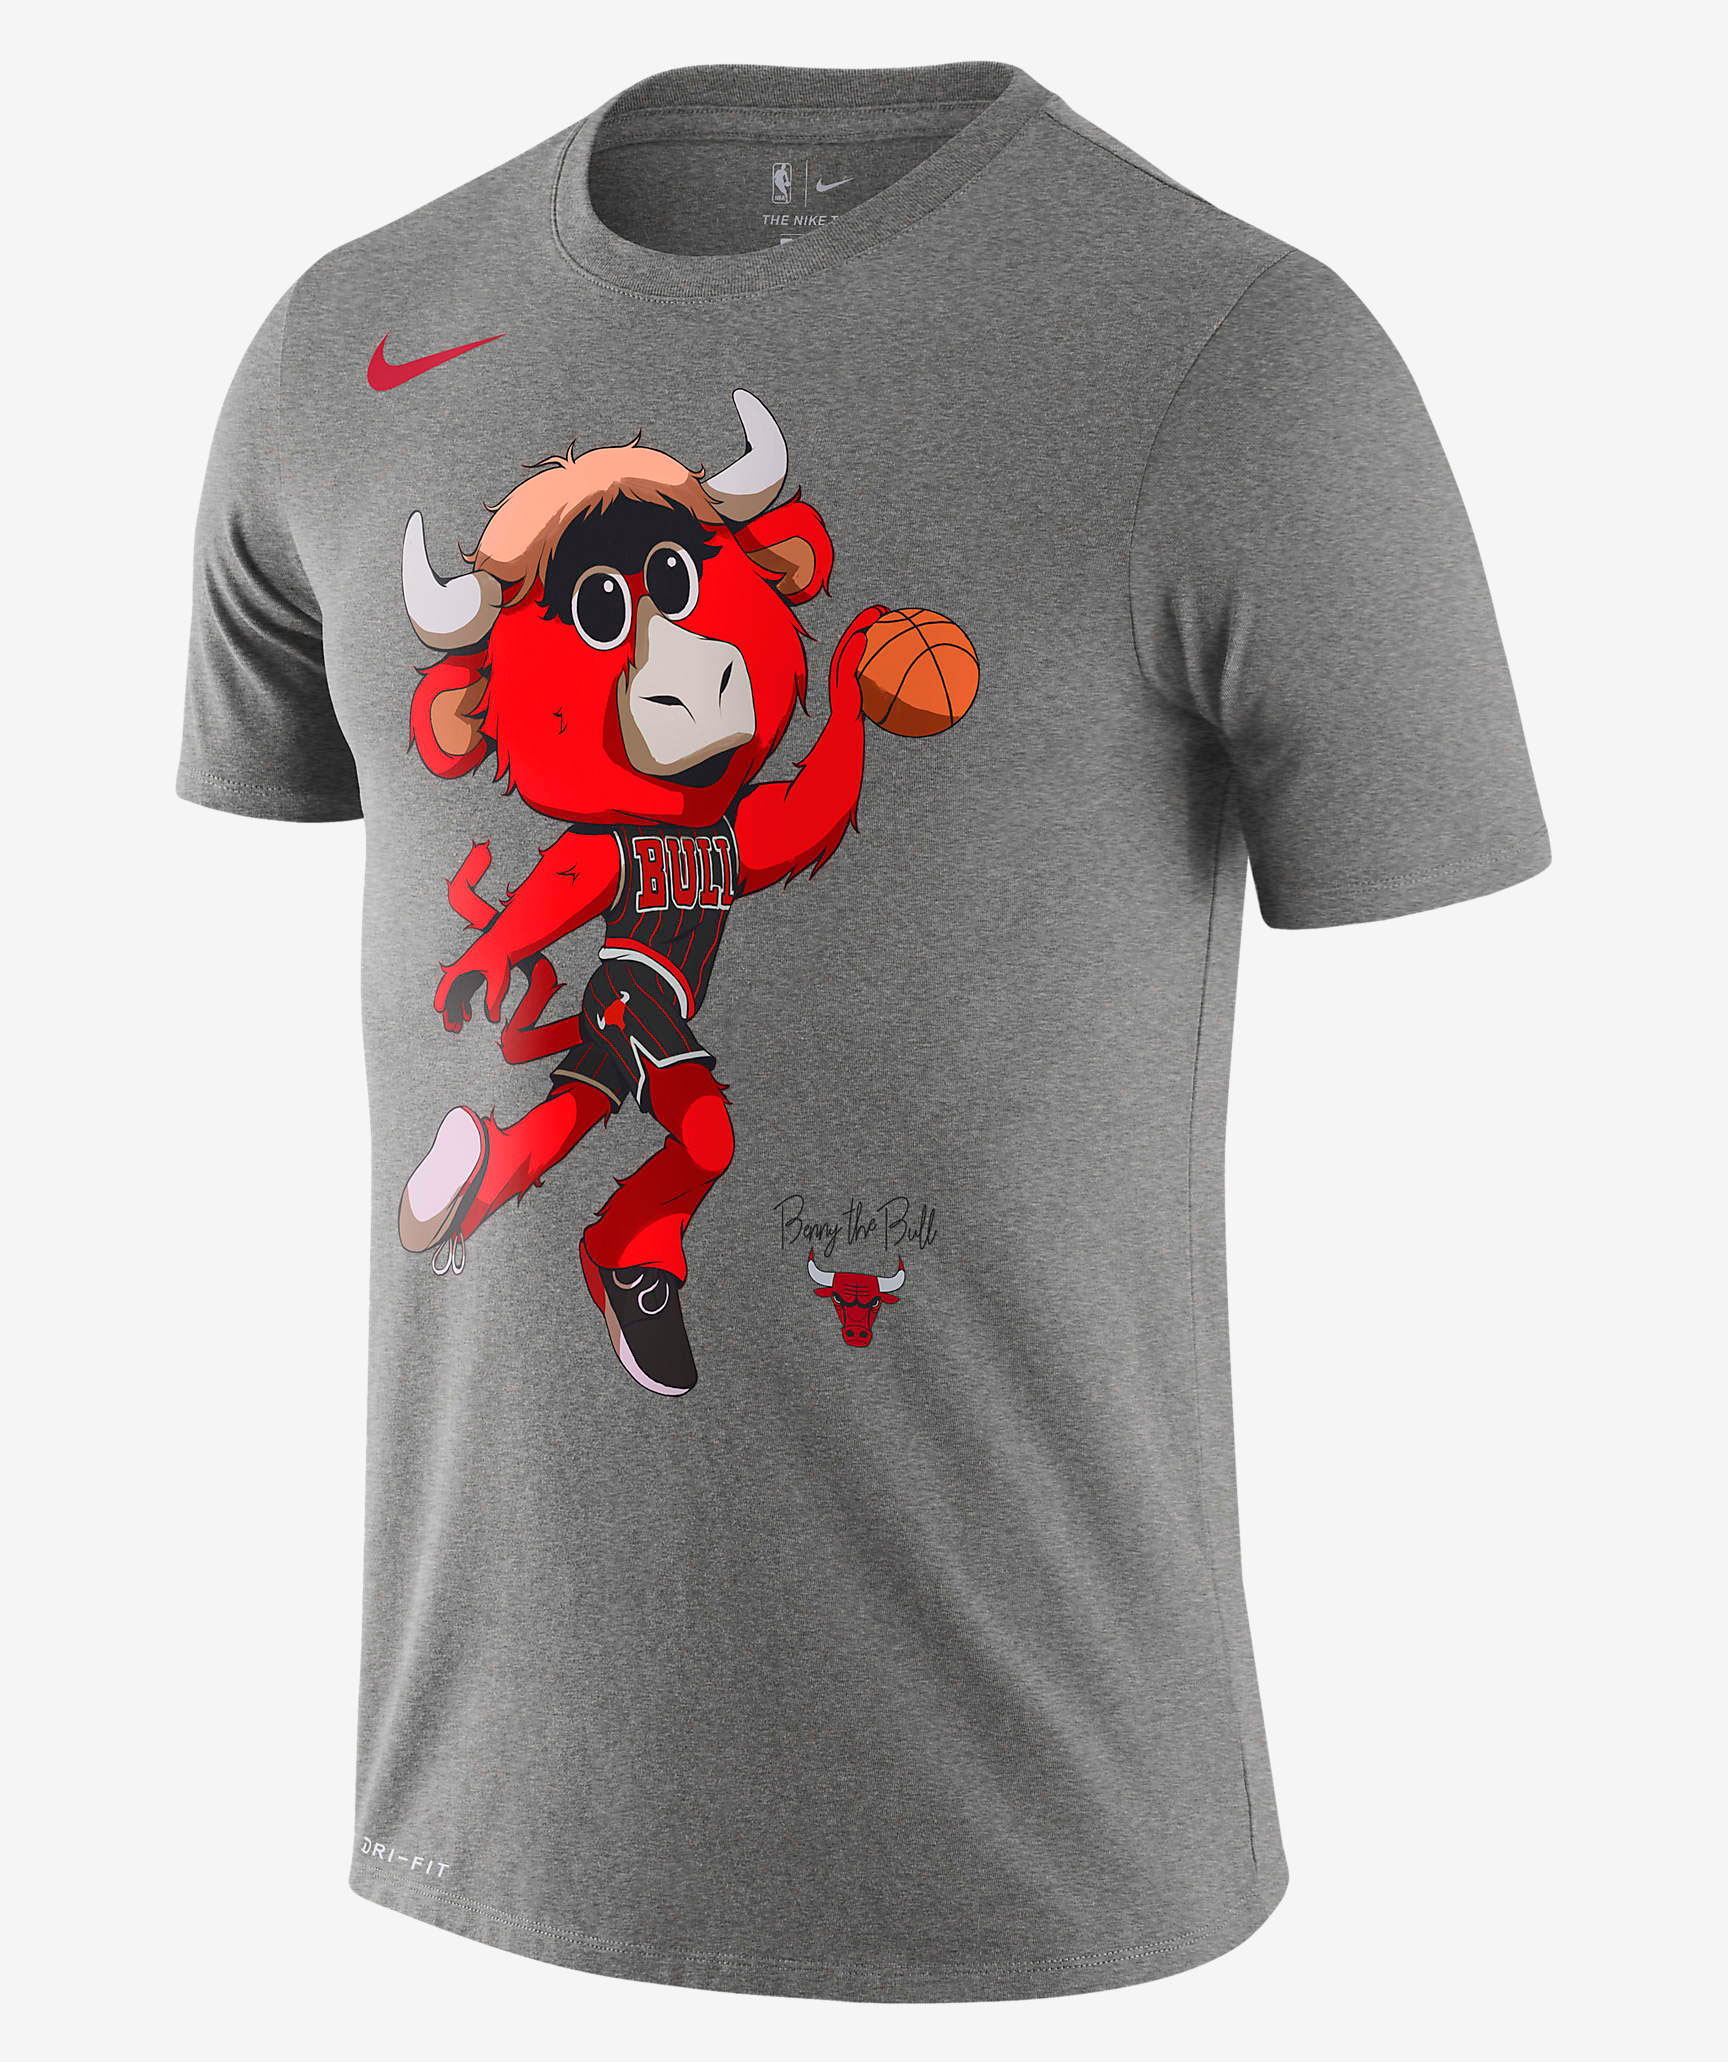 nike-chicago-bulls-mascot-shirt